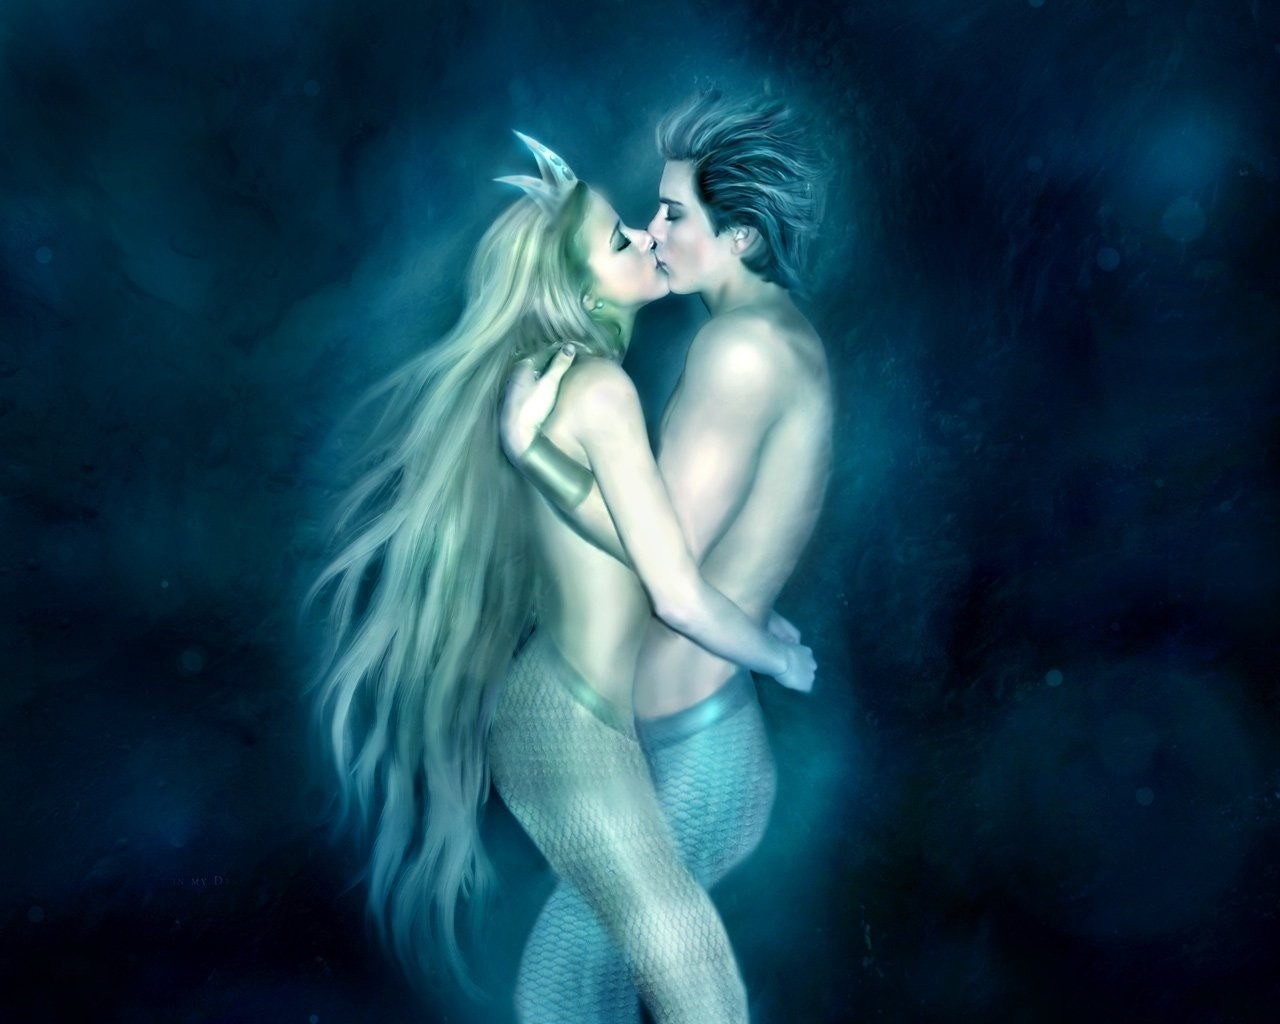 Wallpaper - Mermaid And Merman Fantasy , HD Wallpaper & Backgrounds